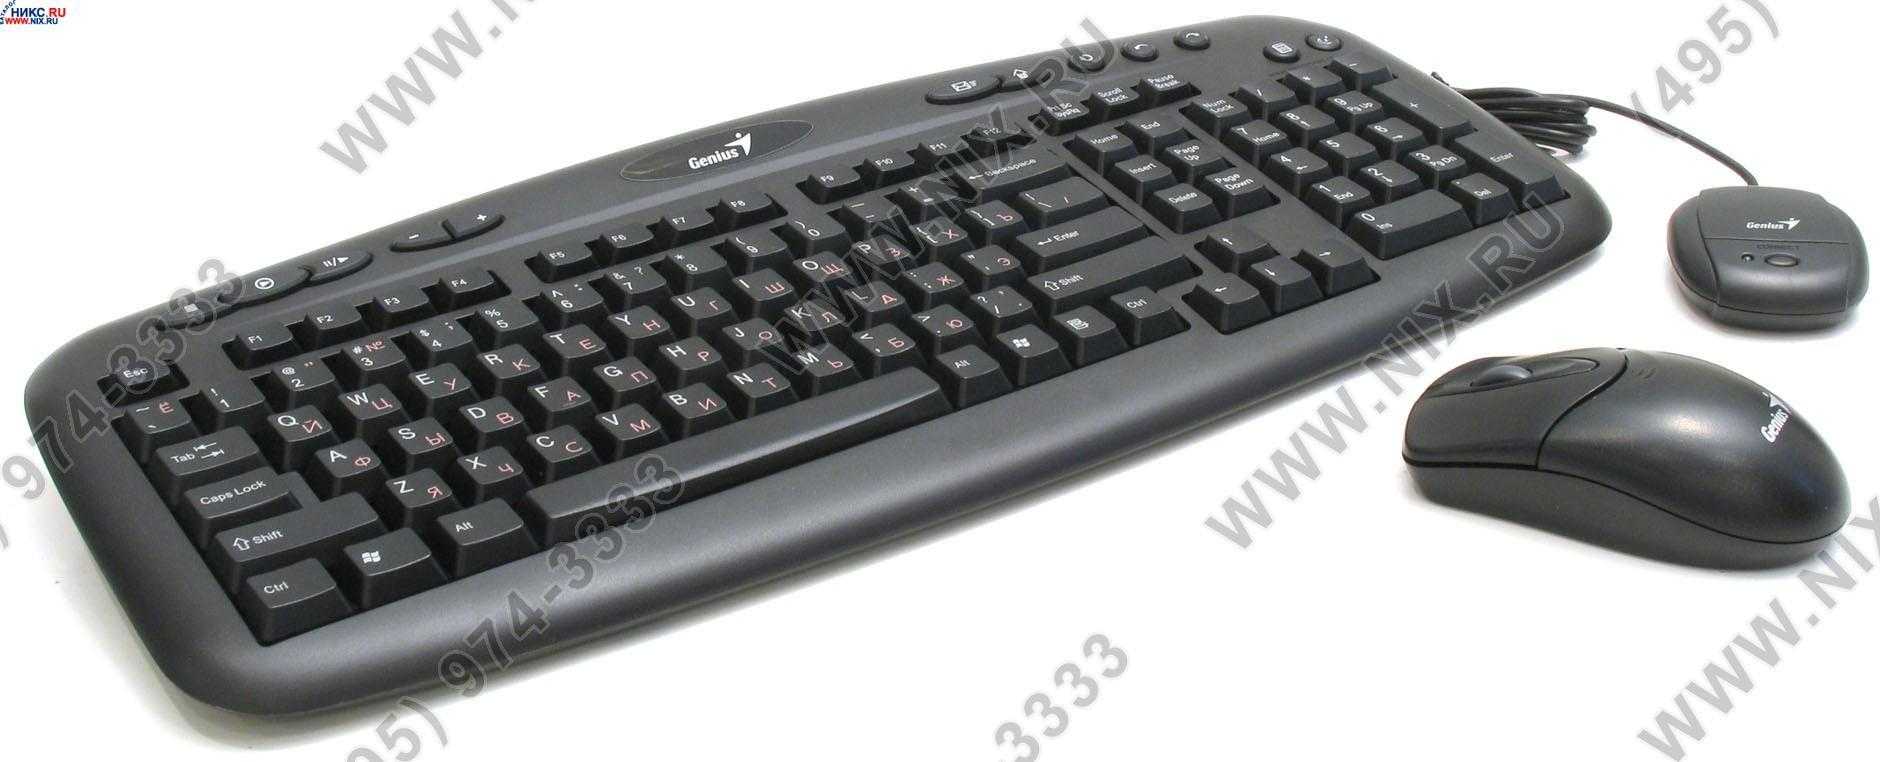 Клавиатура genius kb-200 usb black — купить, цена и характеристики, отзывы